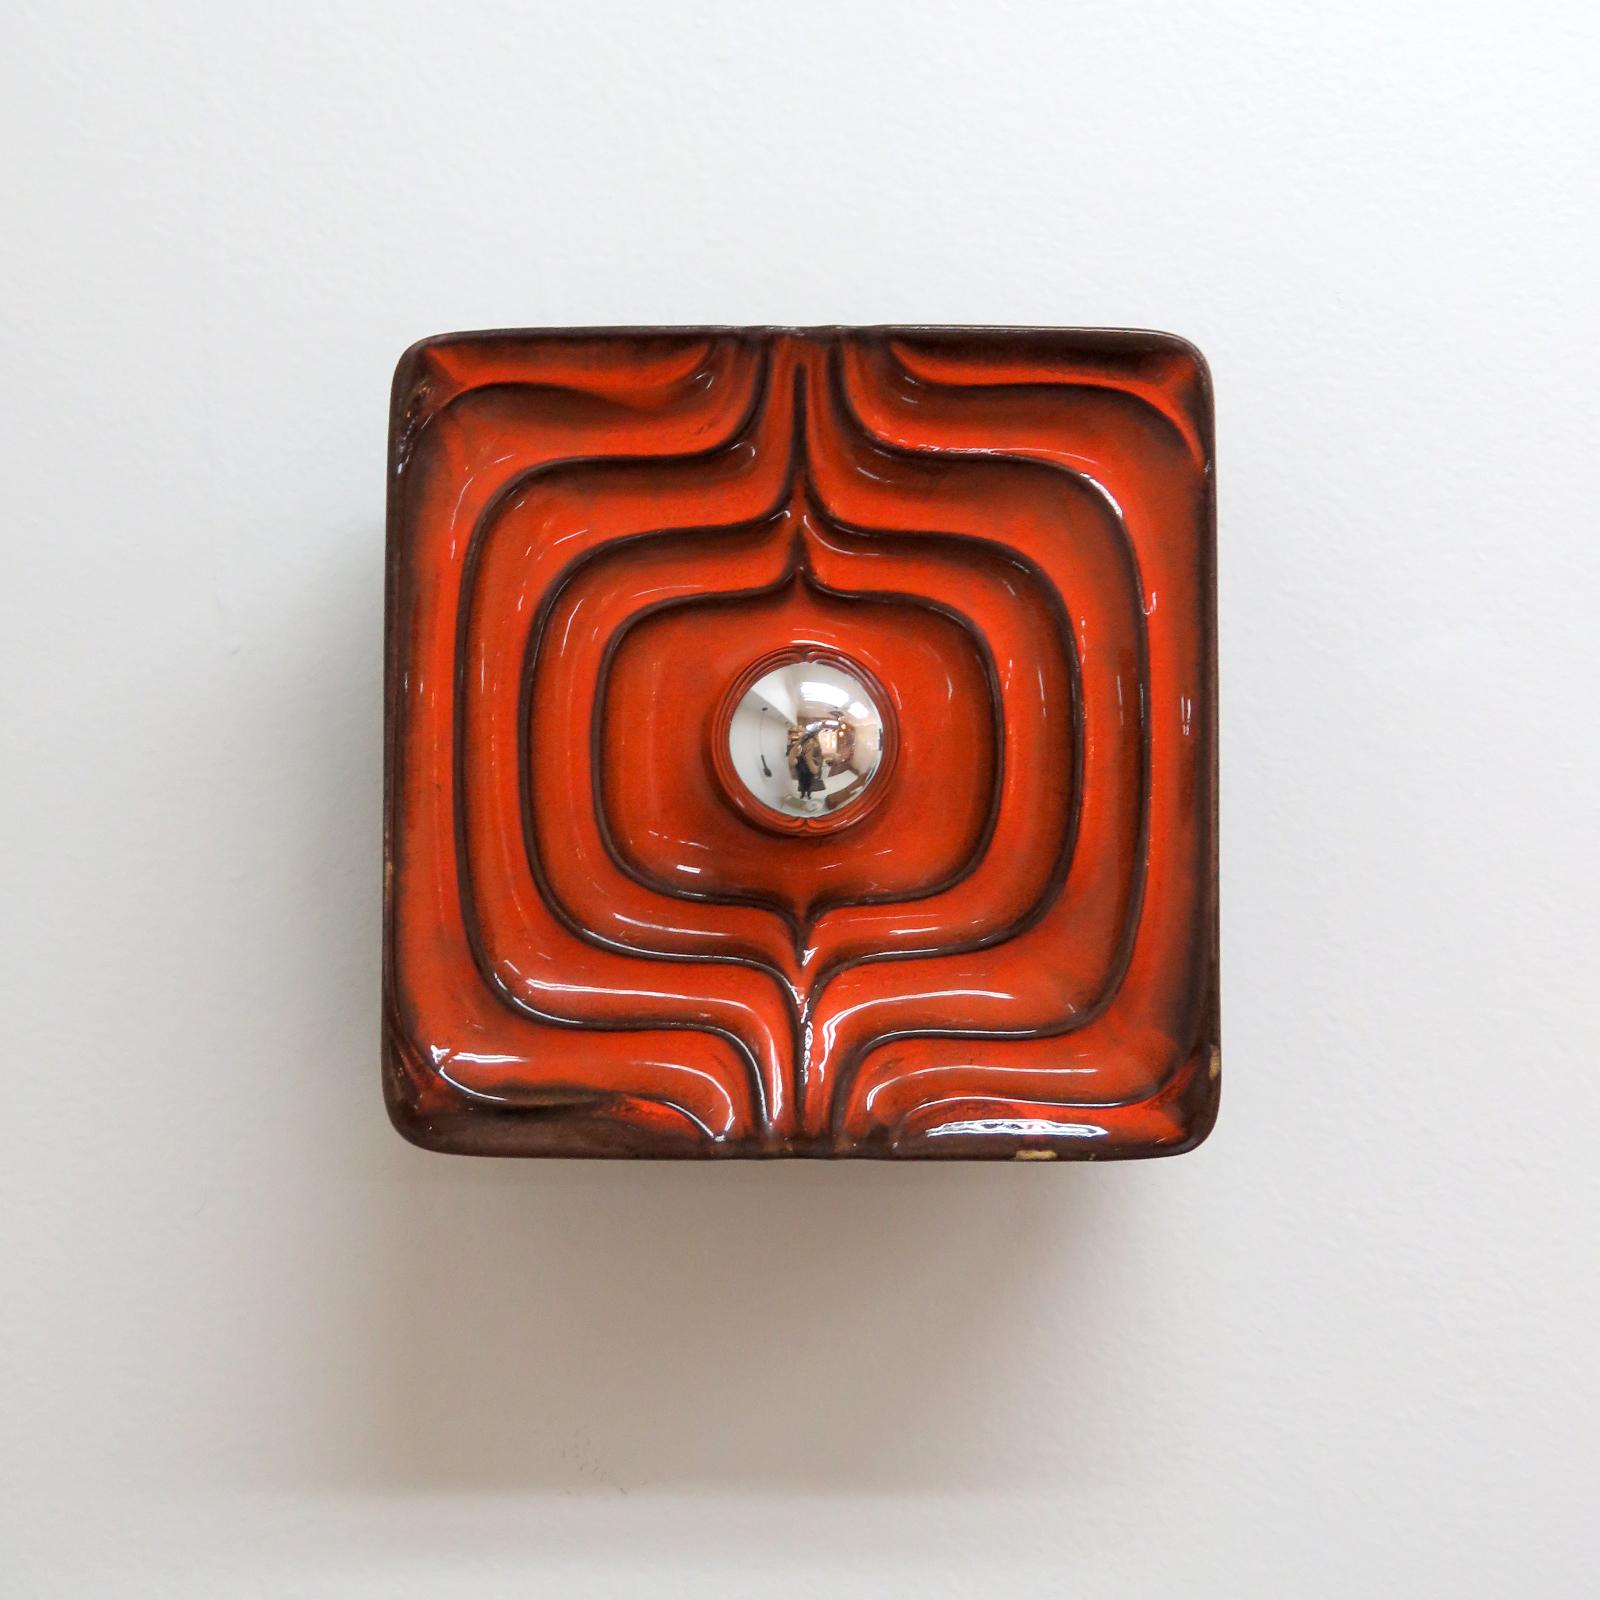 Wunderschönes Paar geometrischer Keramik-Wandleuchten, 1960, mit rot-brauner Glasur. Wandleuchten mit einer Glühbirne, hier mit einer Glühbirne mit Spiegelspitze, die ein wunderbares Schattenspiel an die Wand wirft. Verdrahtet nach US-Standard, eine